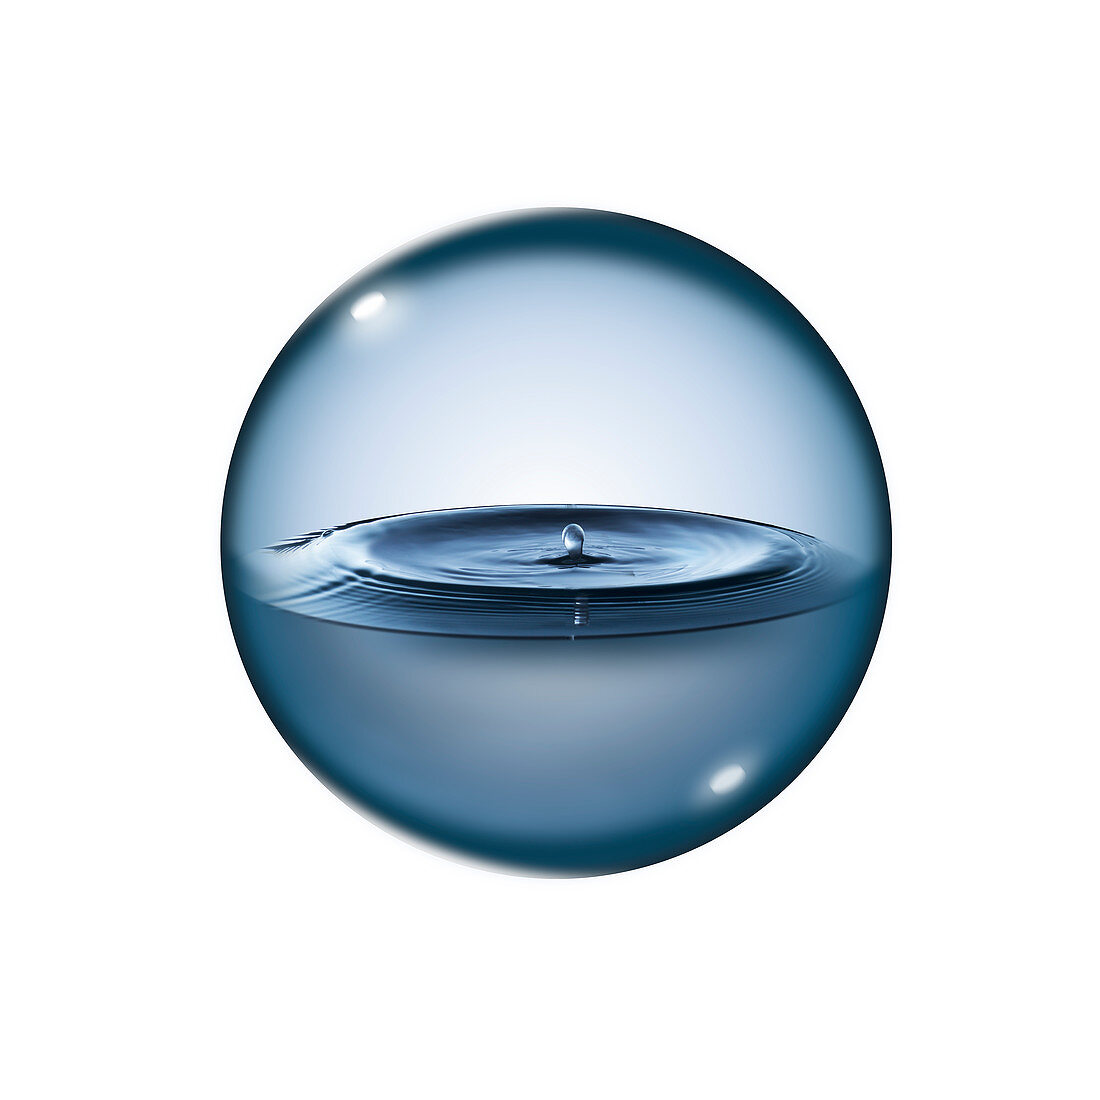 Liquid in sphere, composite image